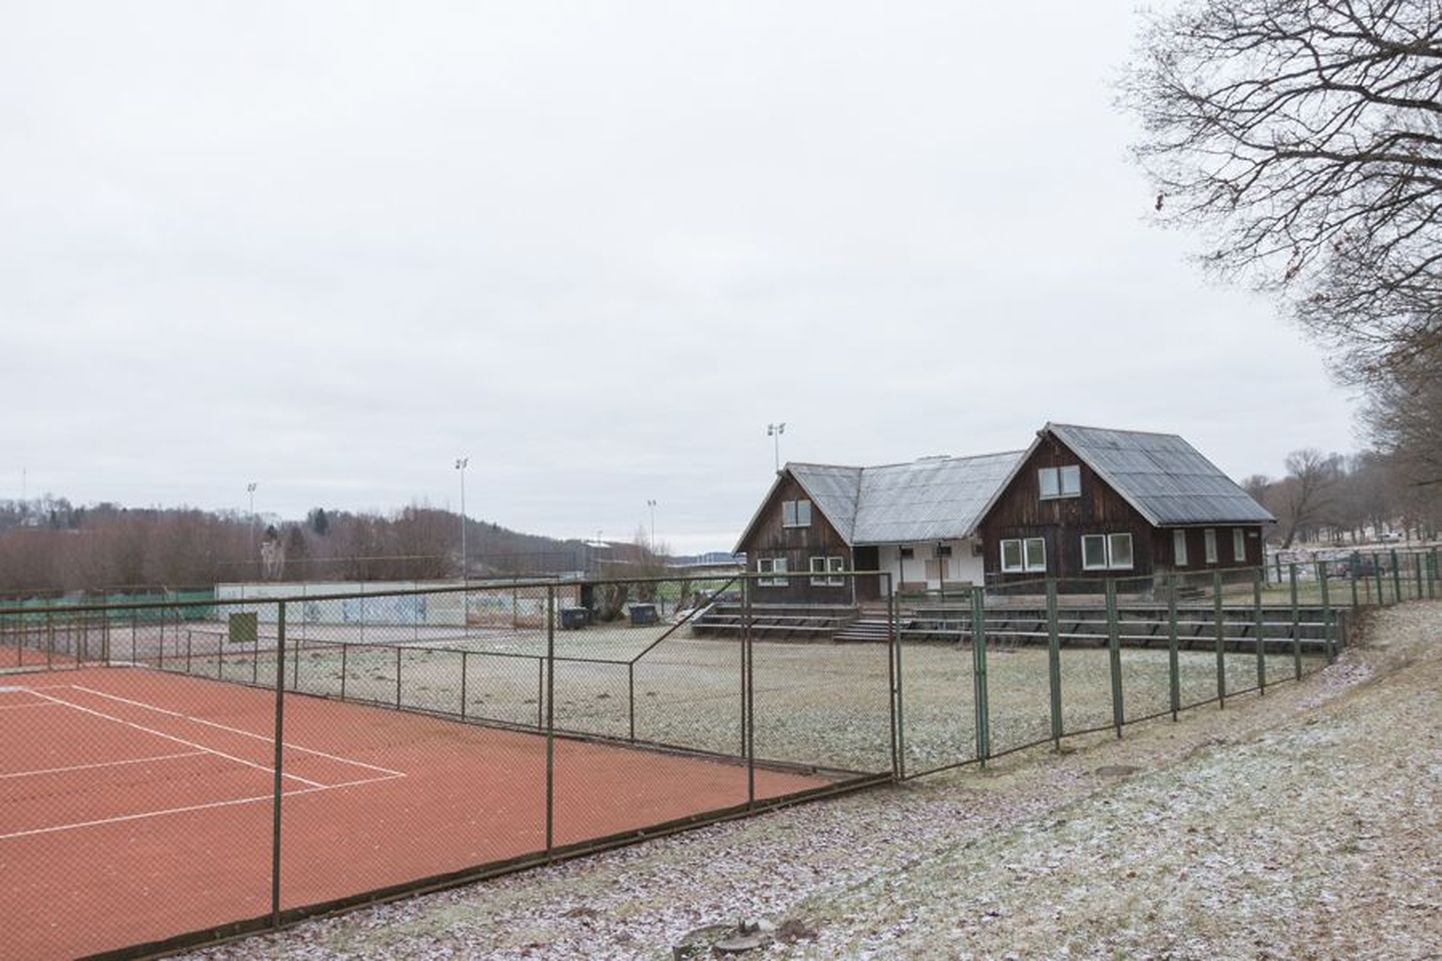 Tennisemaja on aastatega nii ära väsinud, et seda ei saa enam üldse kasutada. Väljakud on heas seisus vaid sobiva ilmaga. Tänavu kavatsevad linn, tenniseklubi ja investorid tennisekompleksi 400 000 euro eest uueks ehitada.